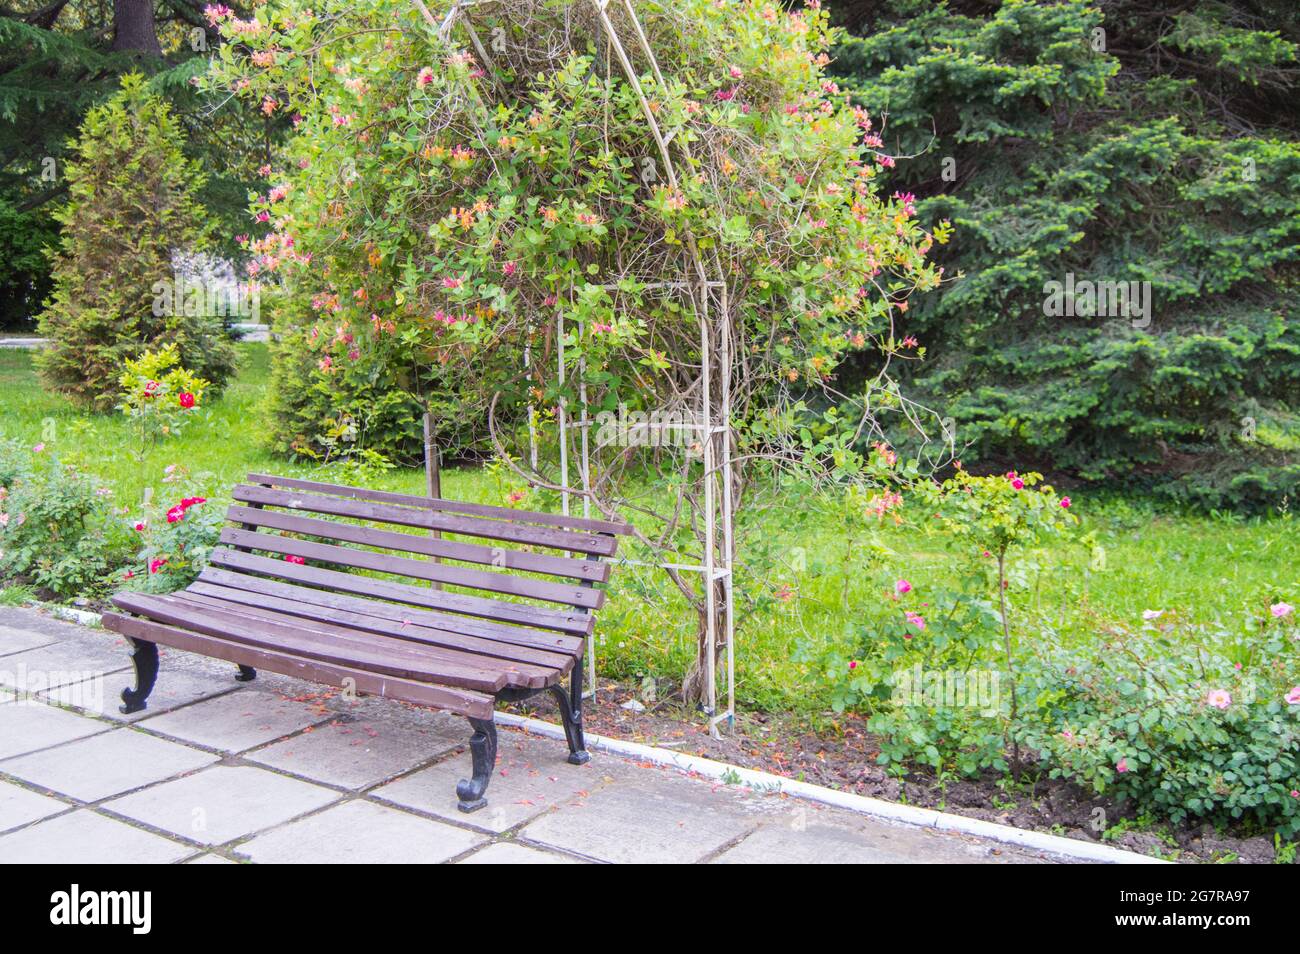 Eine alte Holzbank in der Nähe eines mit Blumen bedeckten Spaliers, ein Quellpark, ein selektiver Fokus. Stockfoto